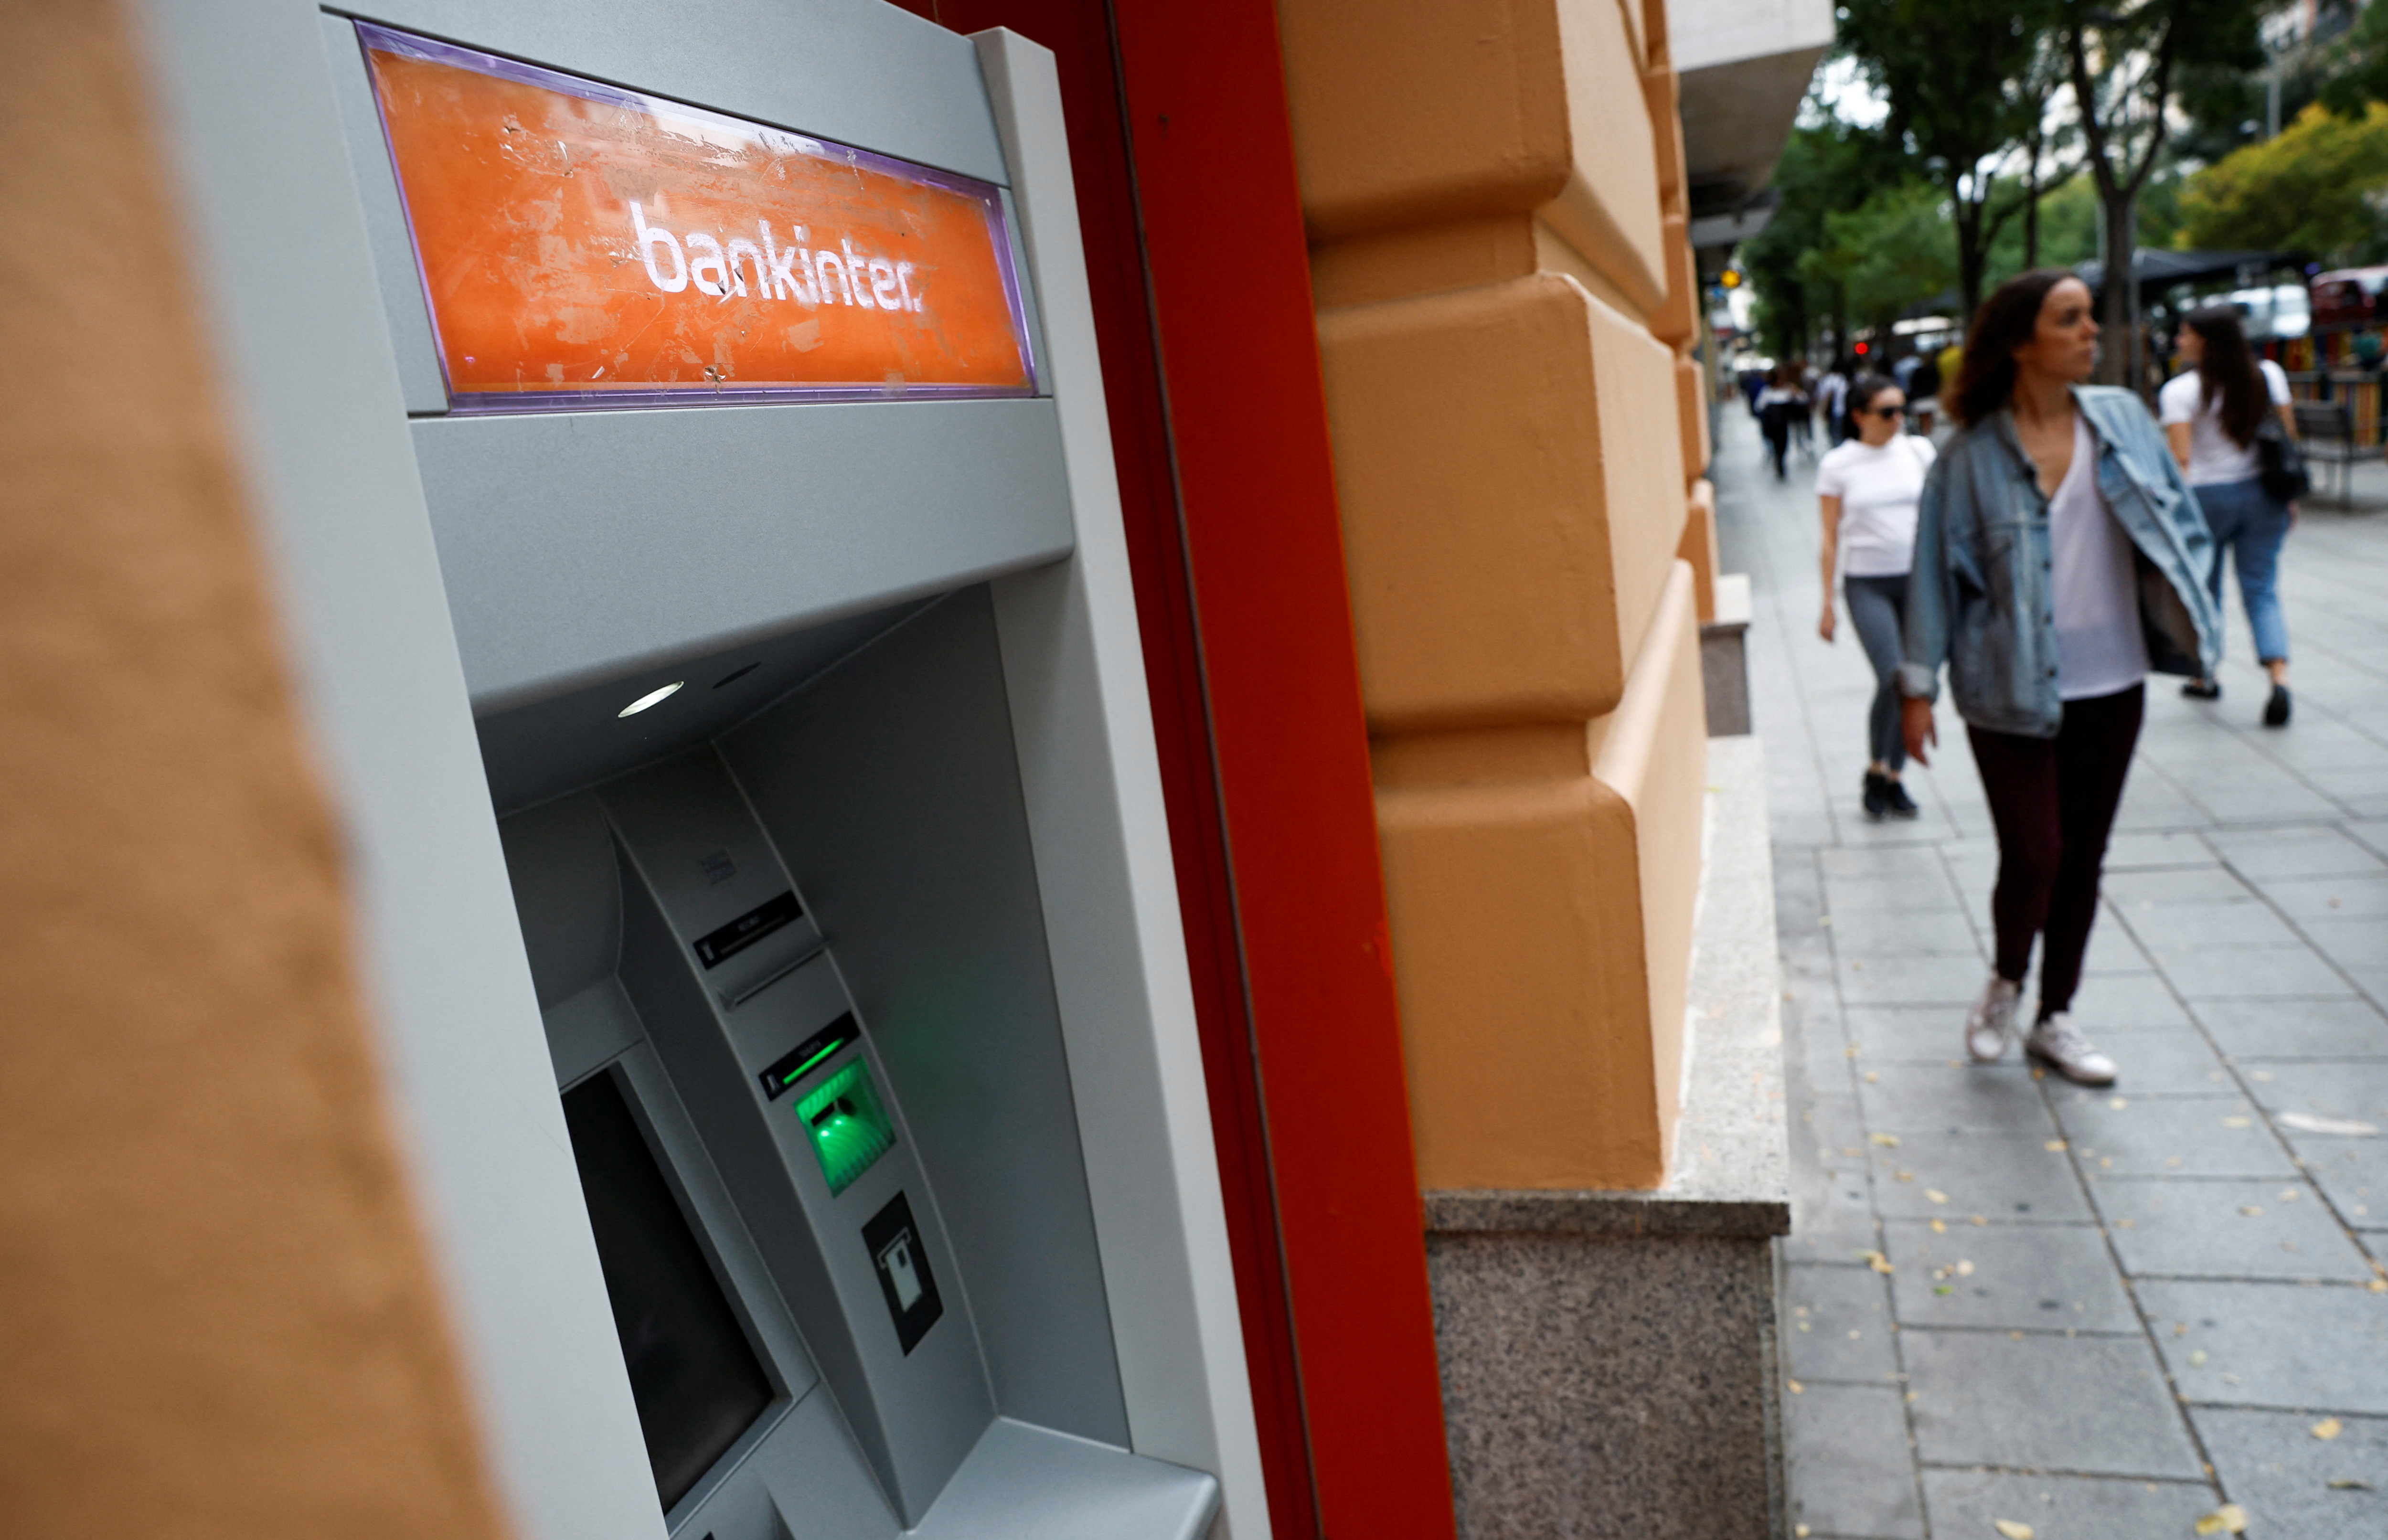 Los argentinos deben saber que pueden emplear los cajeros automáticos para extraer dinero en efectivo fuera del país. (REUTERS/Juan Medina)